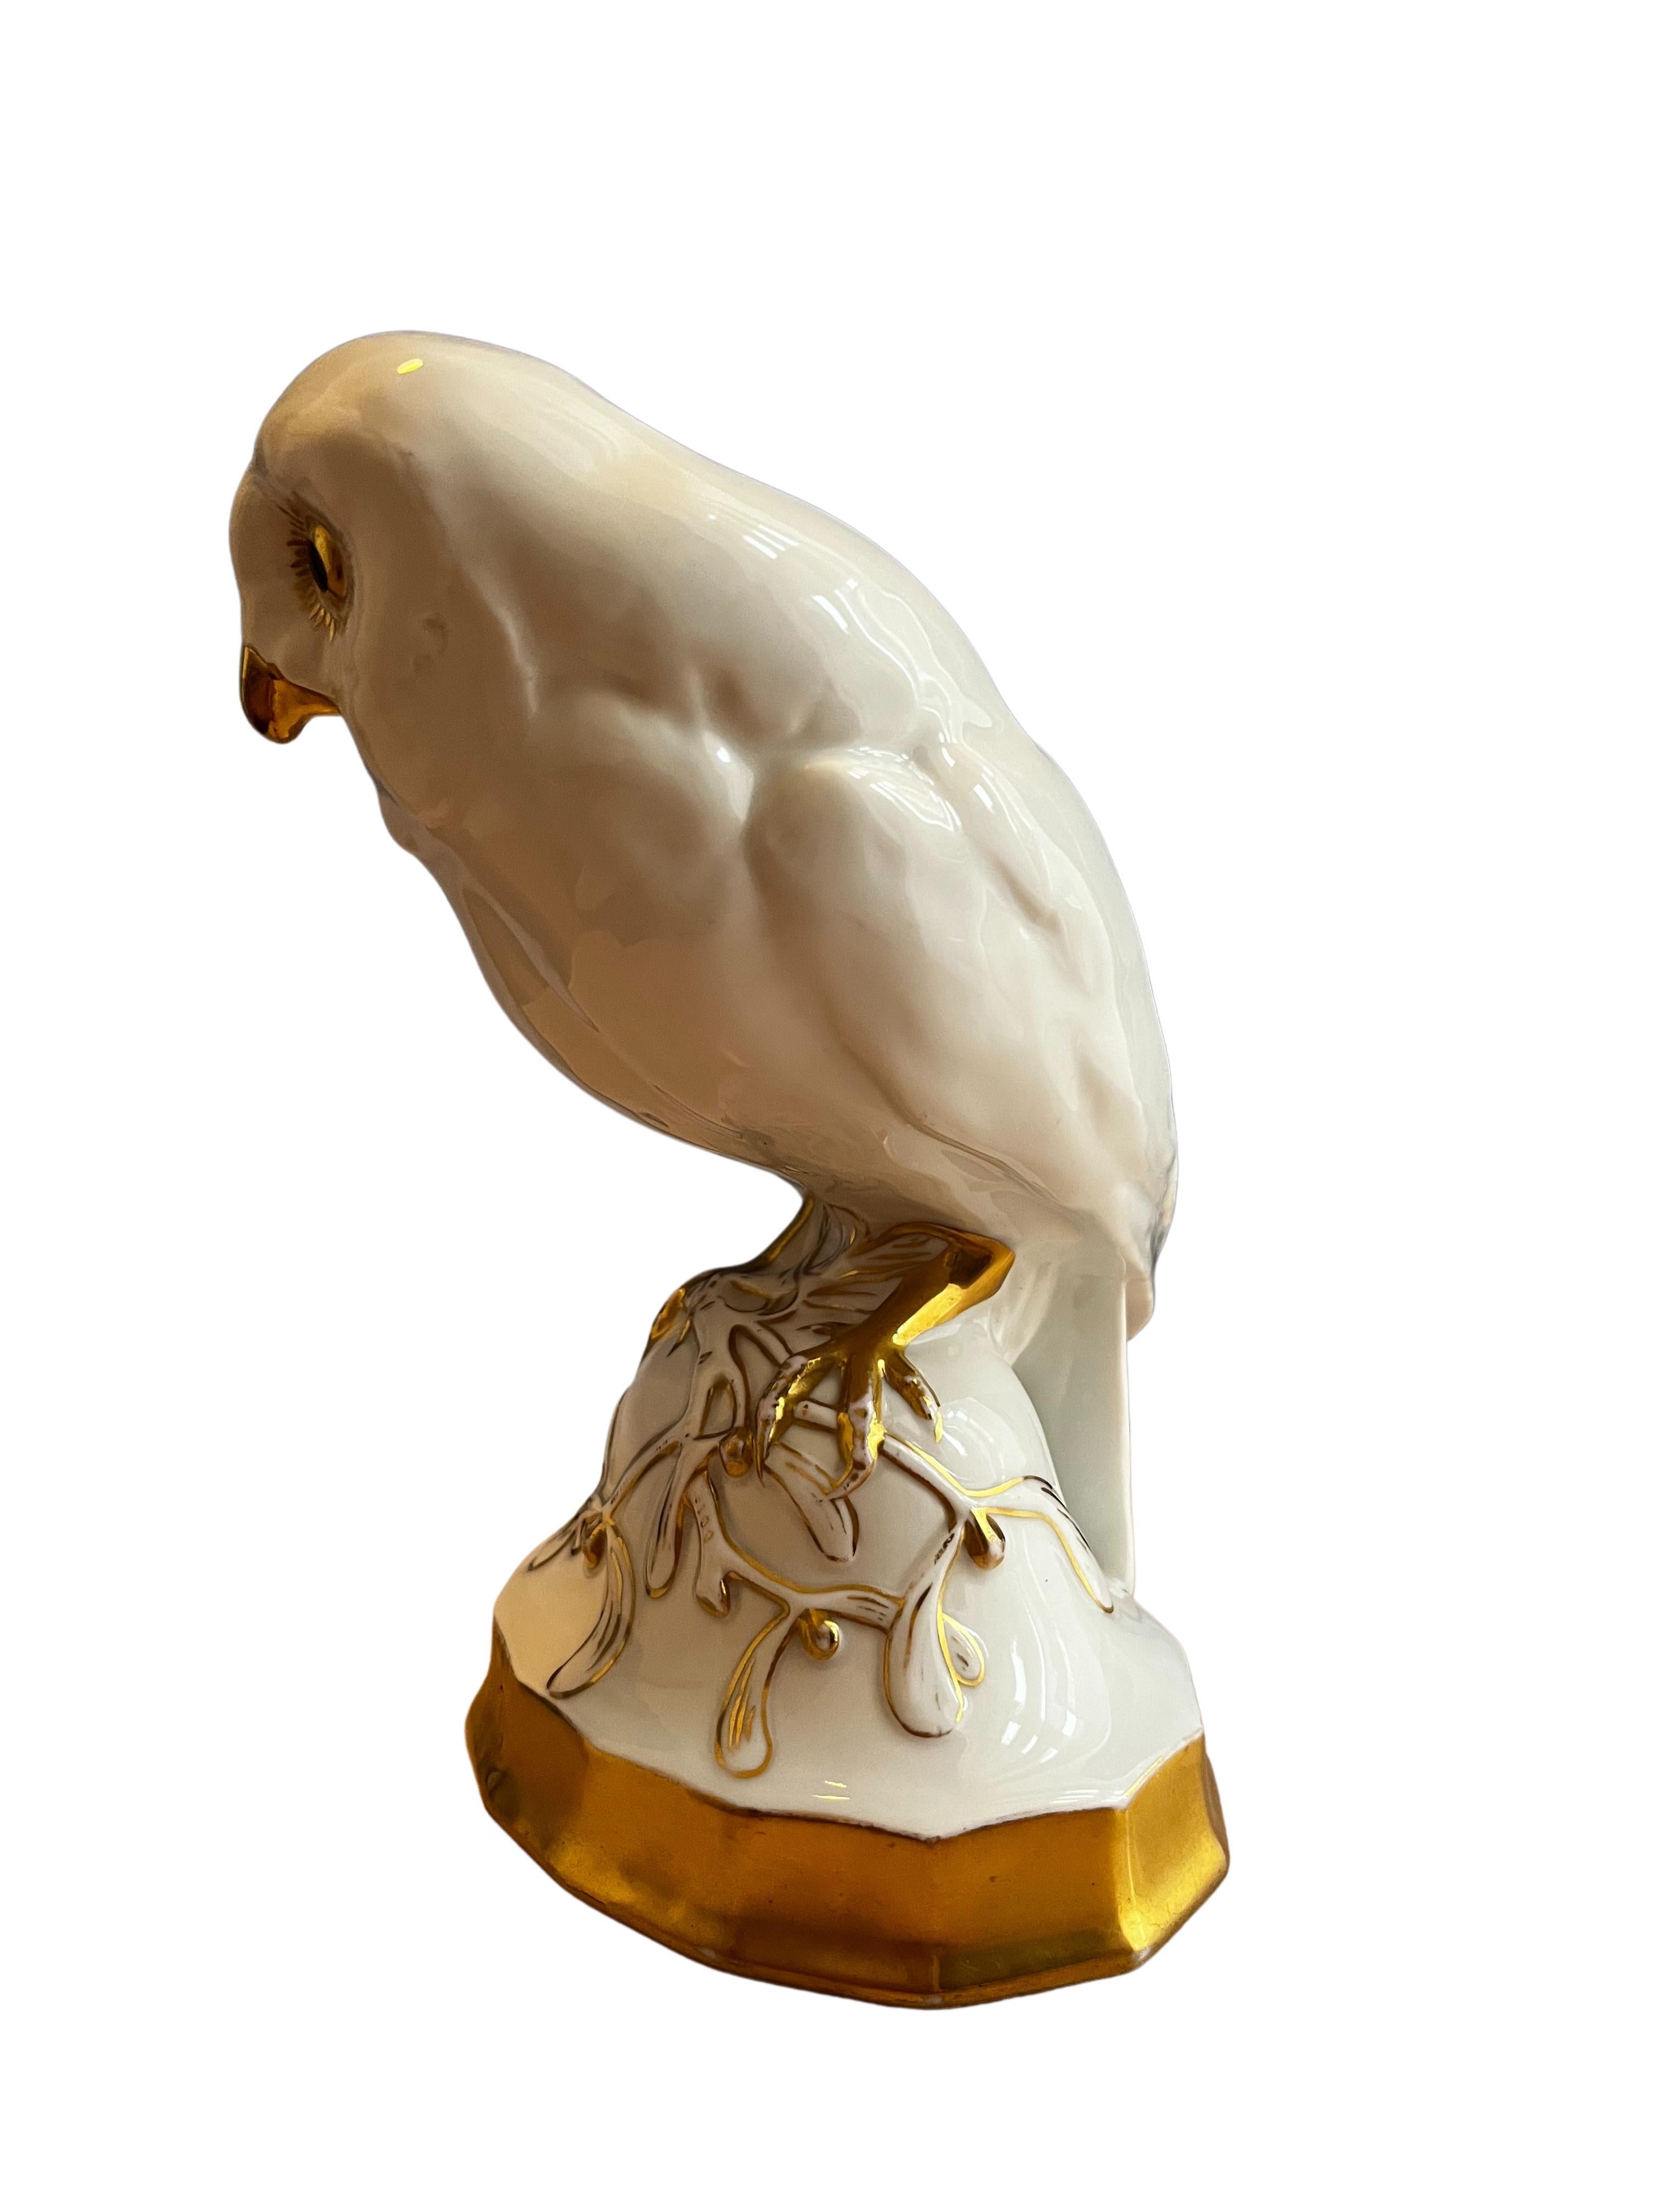 Jugendstil Owl misteltoe pedestal porcelain Hutschenreuther art dep Prof. Klee 1918 Germany For Sale